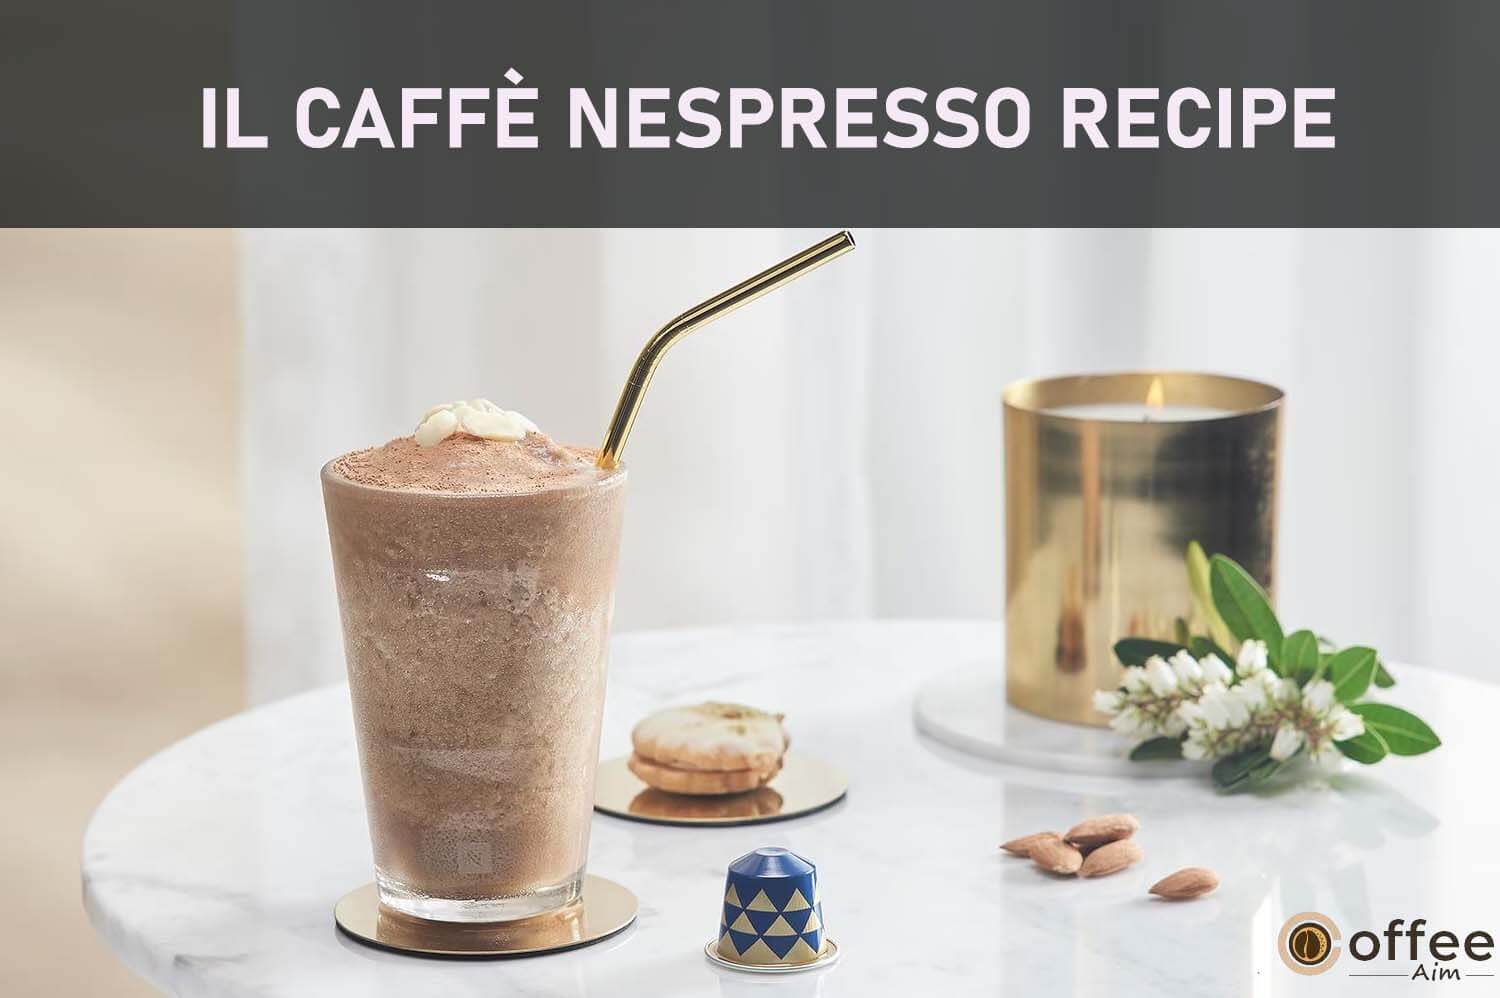 Featured image for the article "Il Caffè Nespresso Recipe"